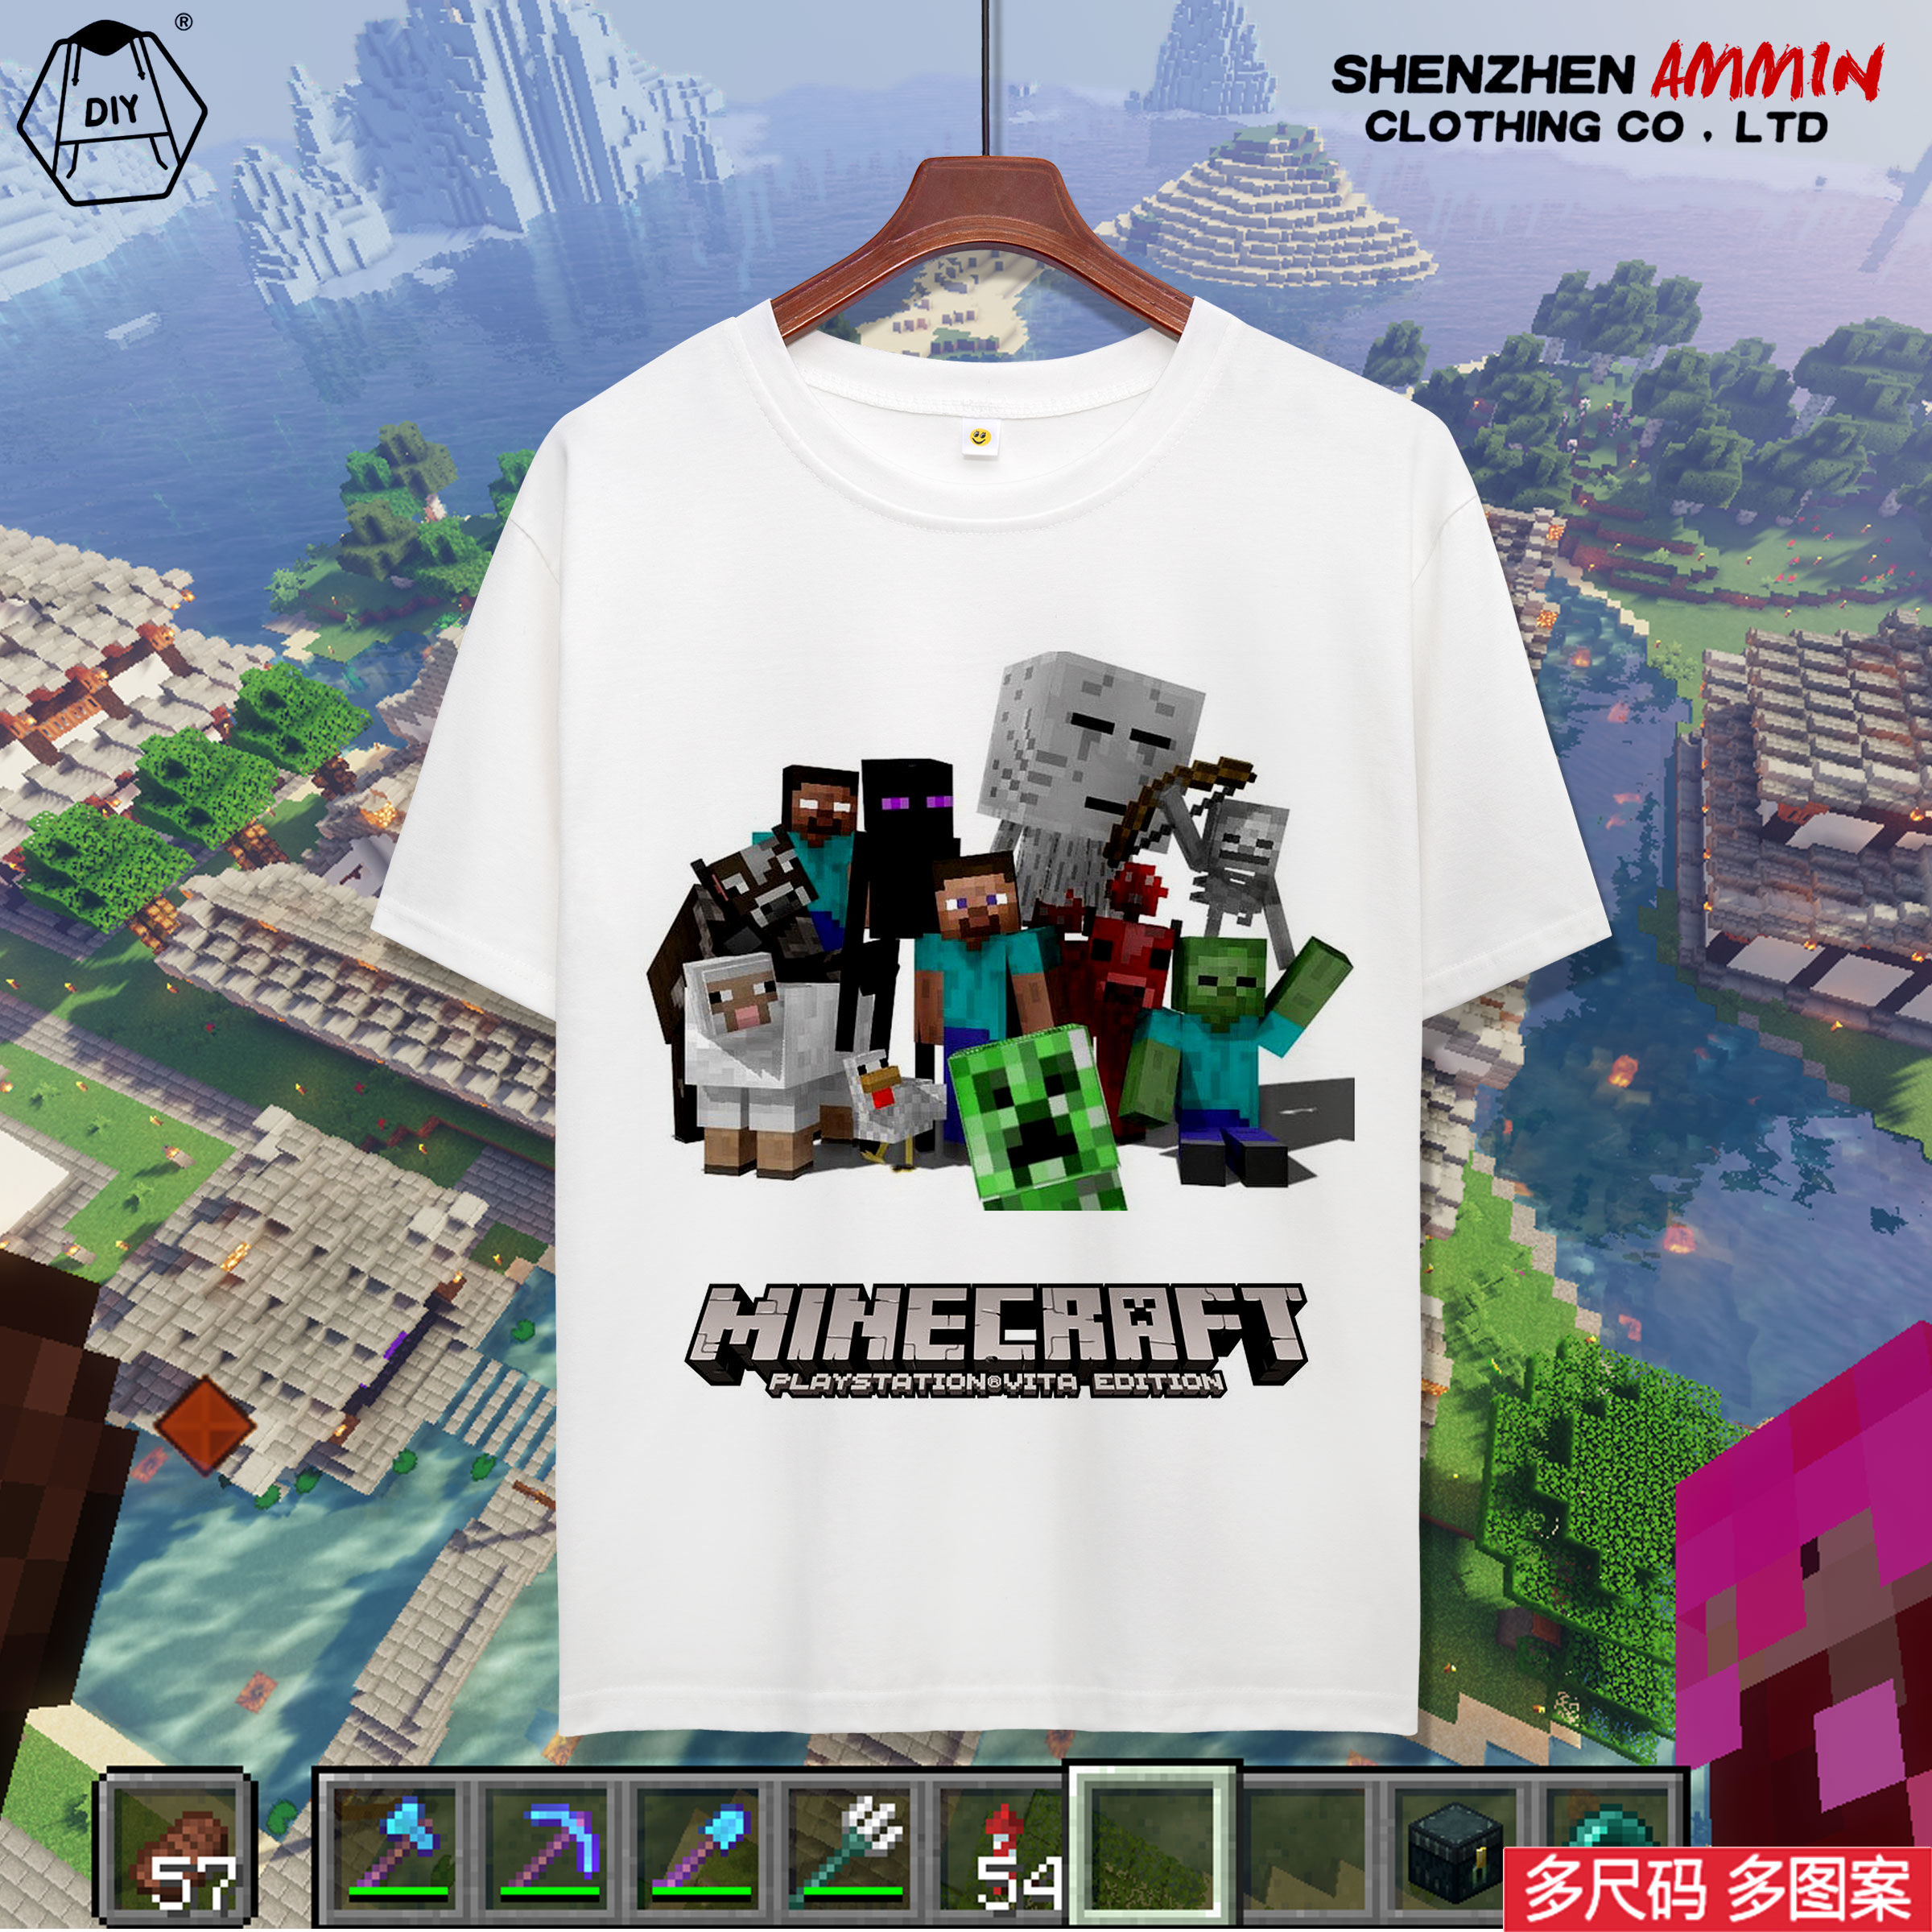 Minecraft衣服漫画 Minecraft衣服下载 Minecraft衣服商品 攻略 淘宝海外